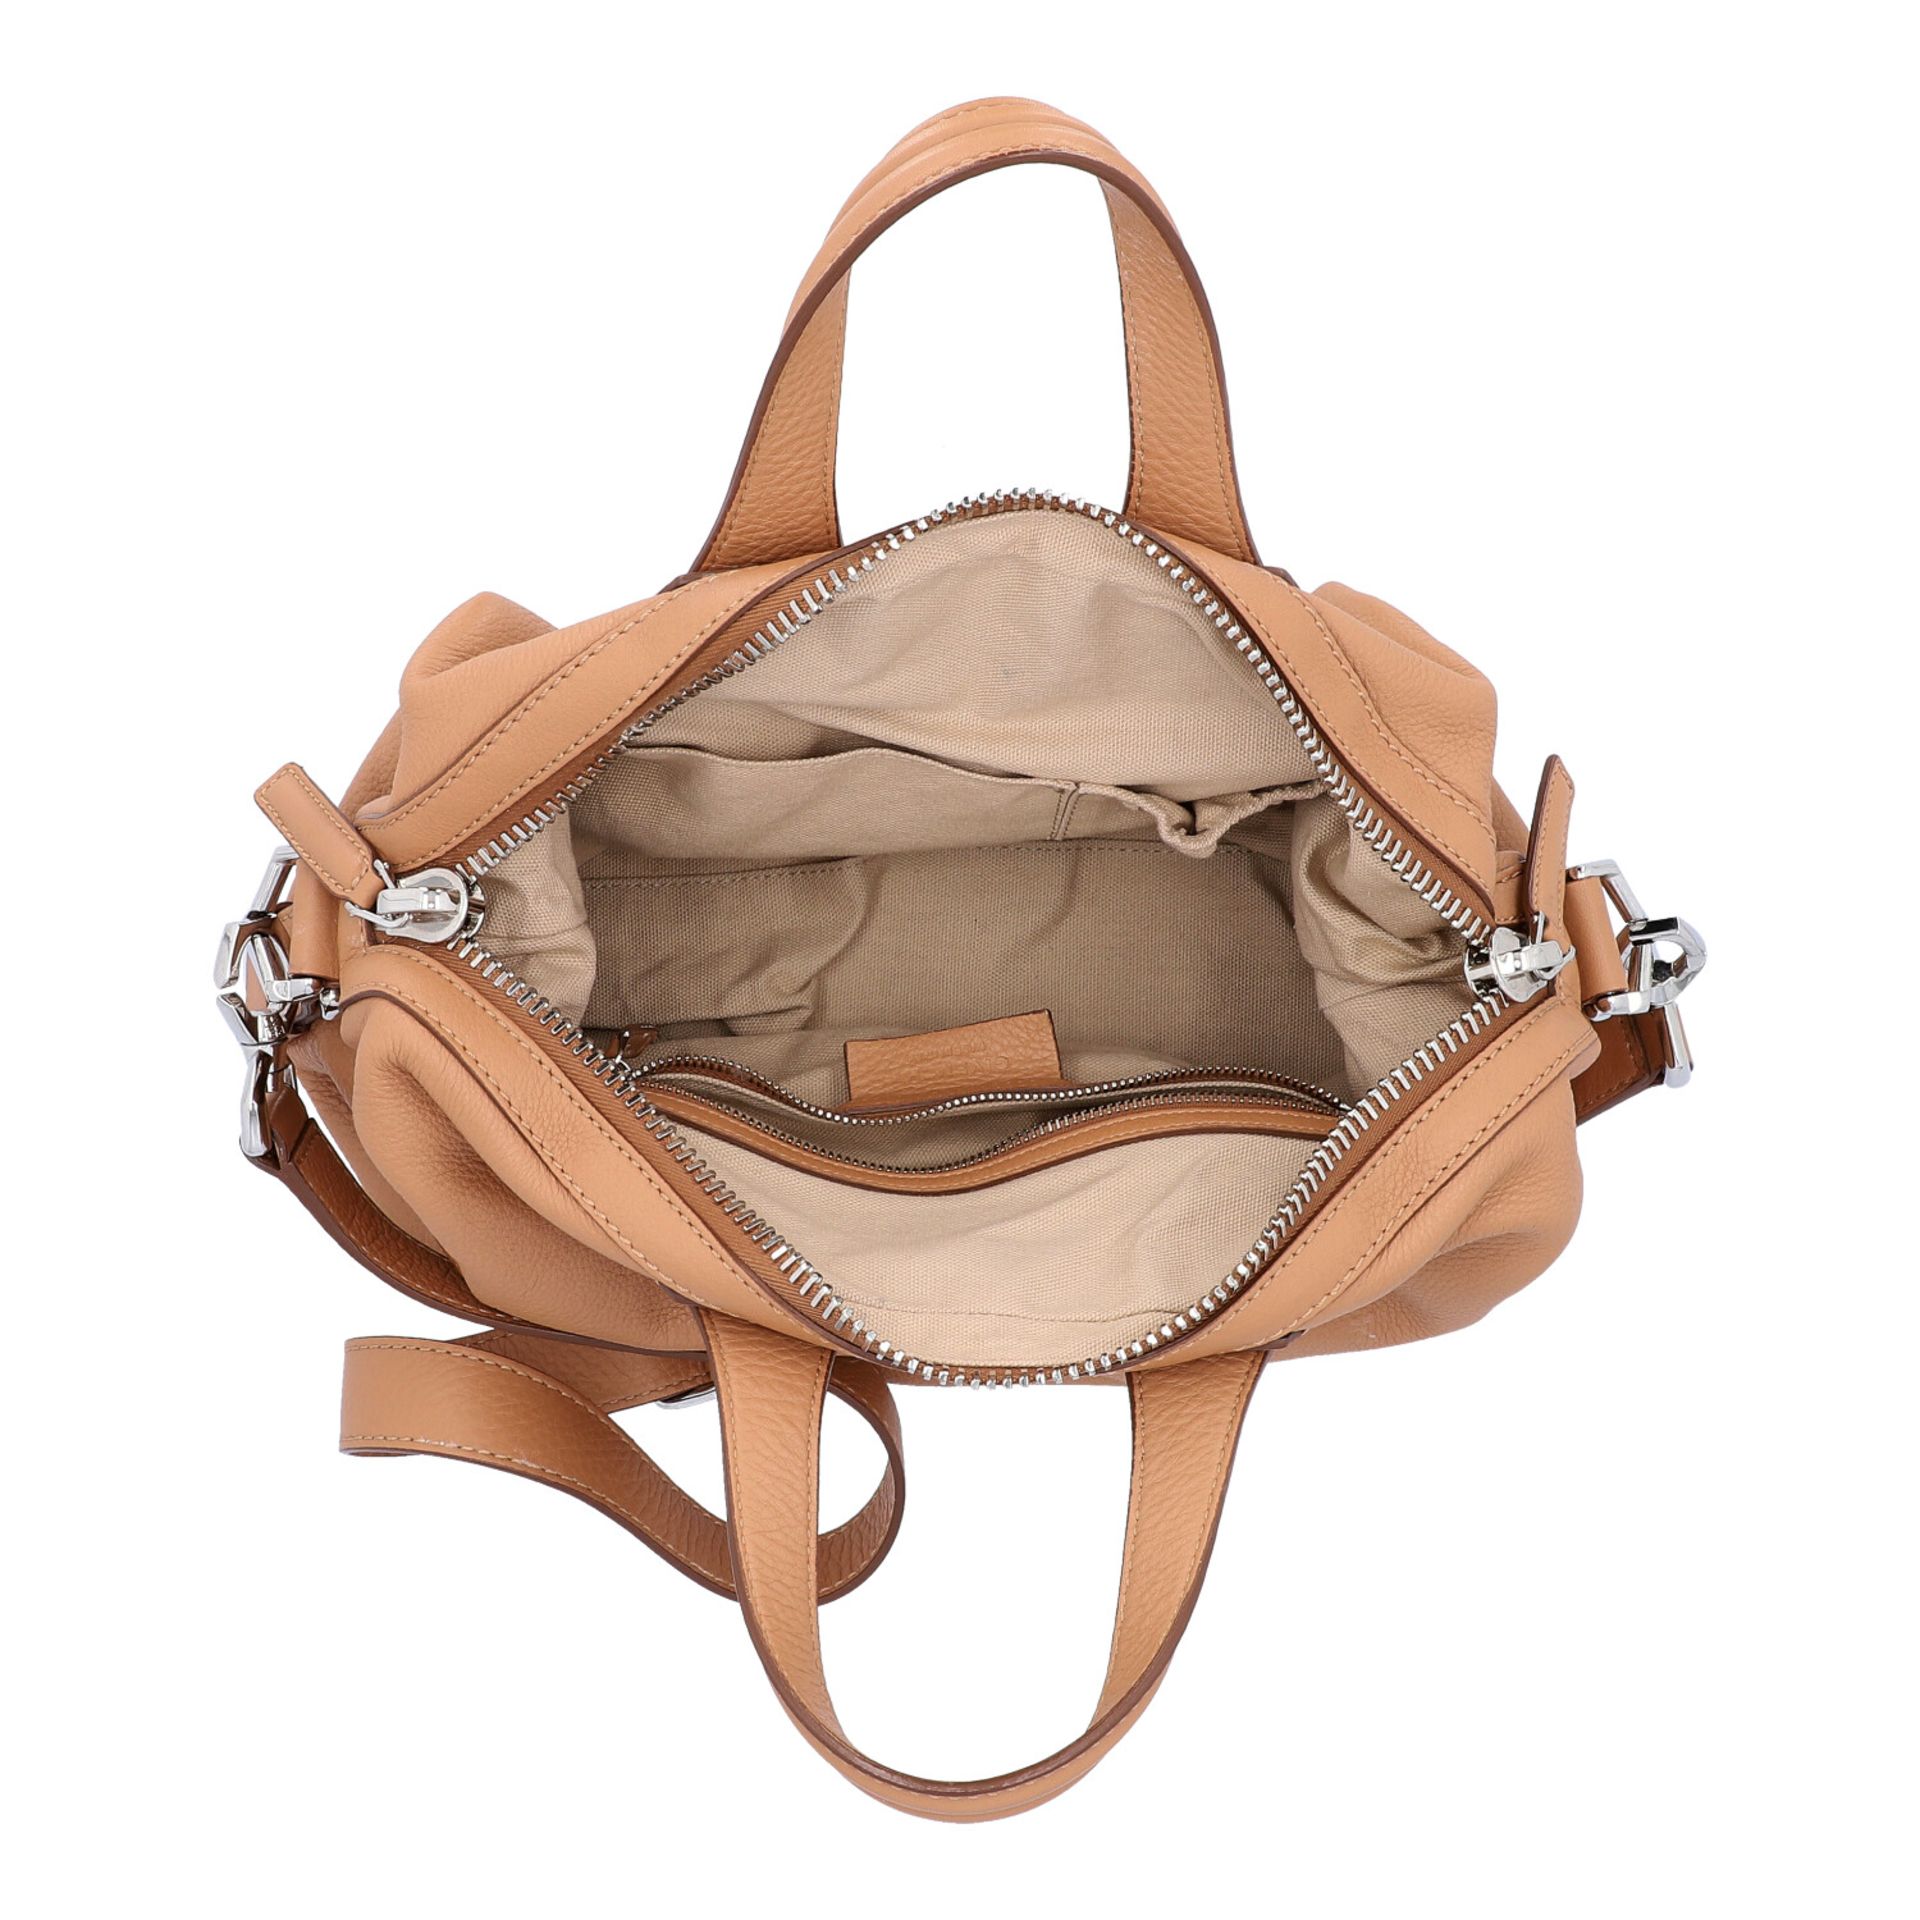 GIVENCHY Handtasche "NIGHTINGALE".Tote Bag in Beige mit silberfarbener Hardware, dekor - Bild 6 aus 8